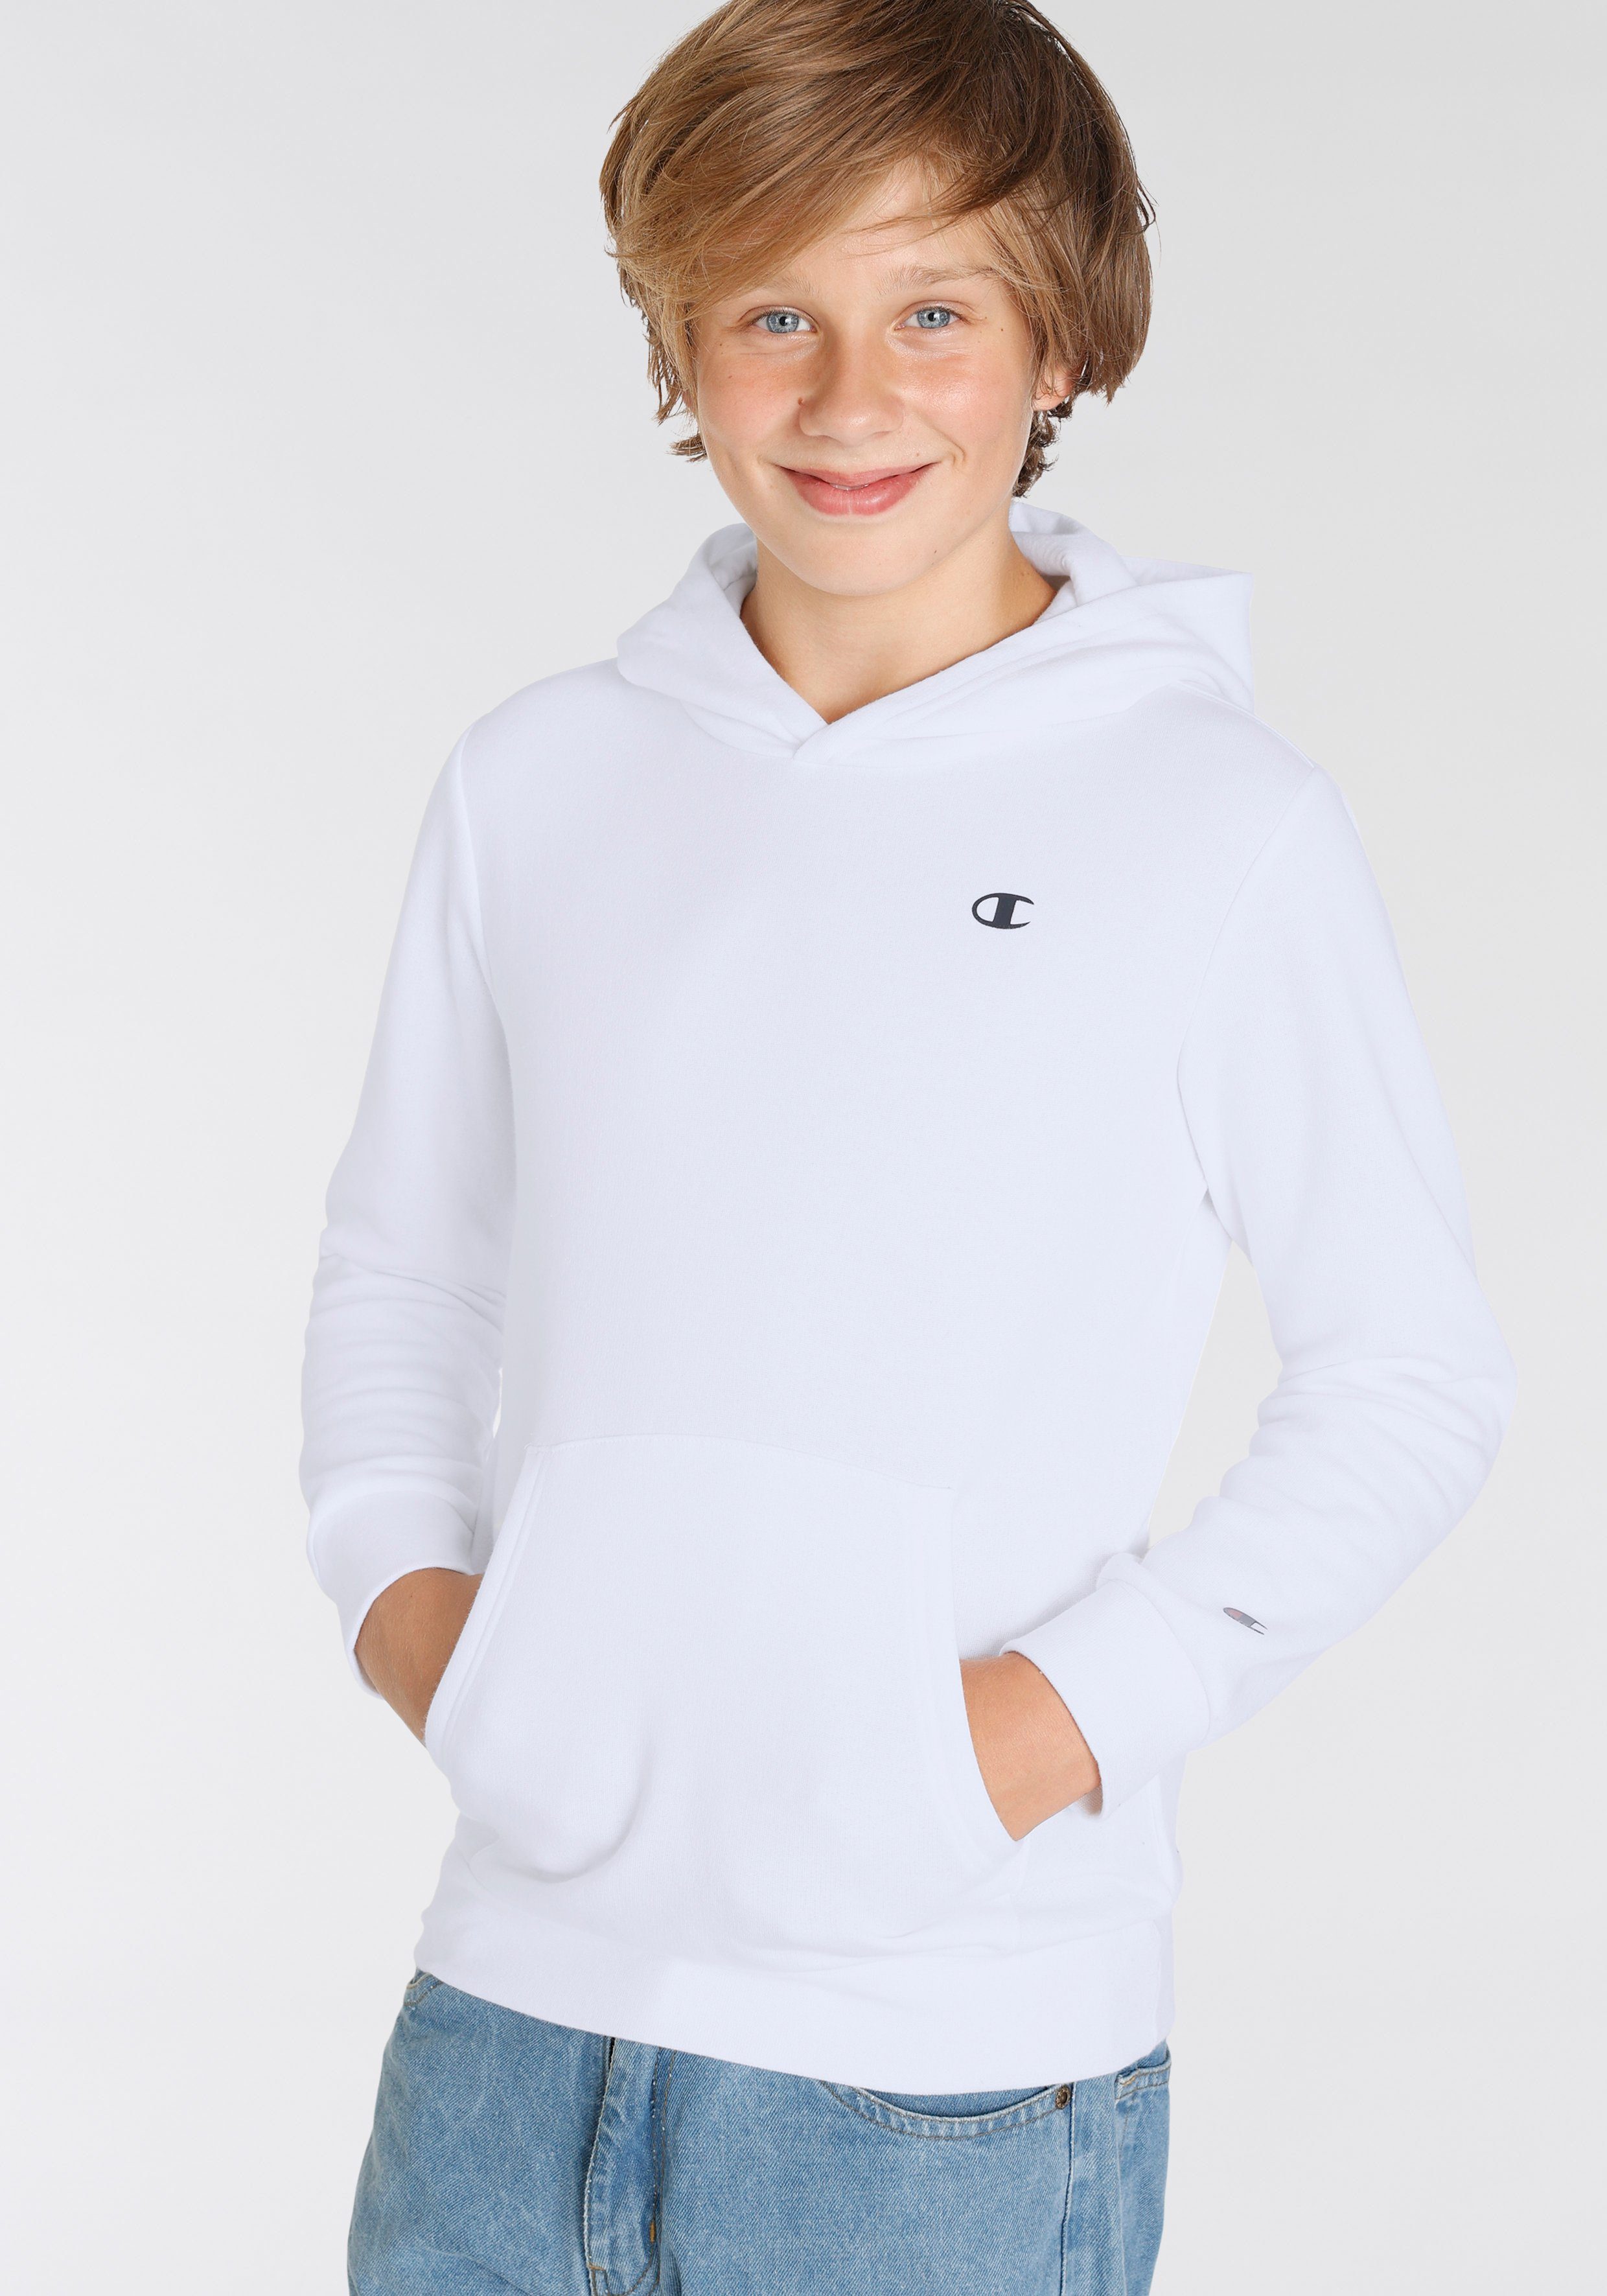 Hooded Kinder Sweatshirt Basic für weiß - Sweatshirt Champion